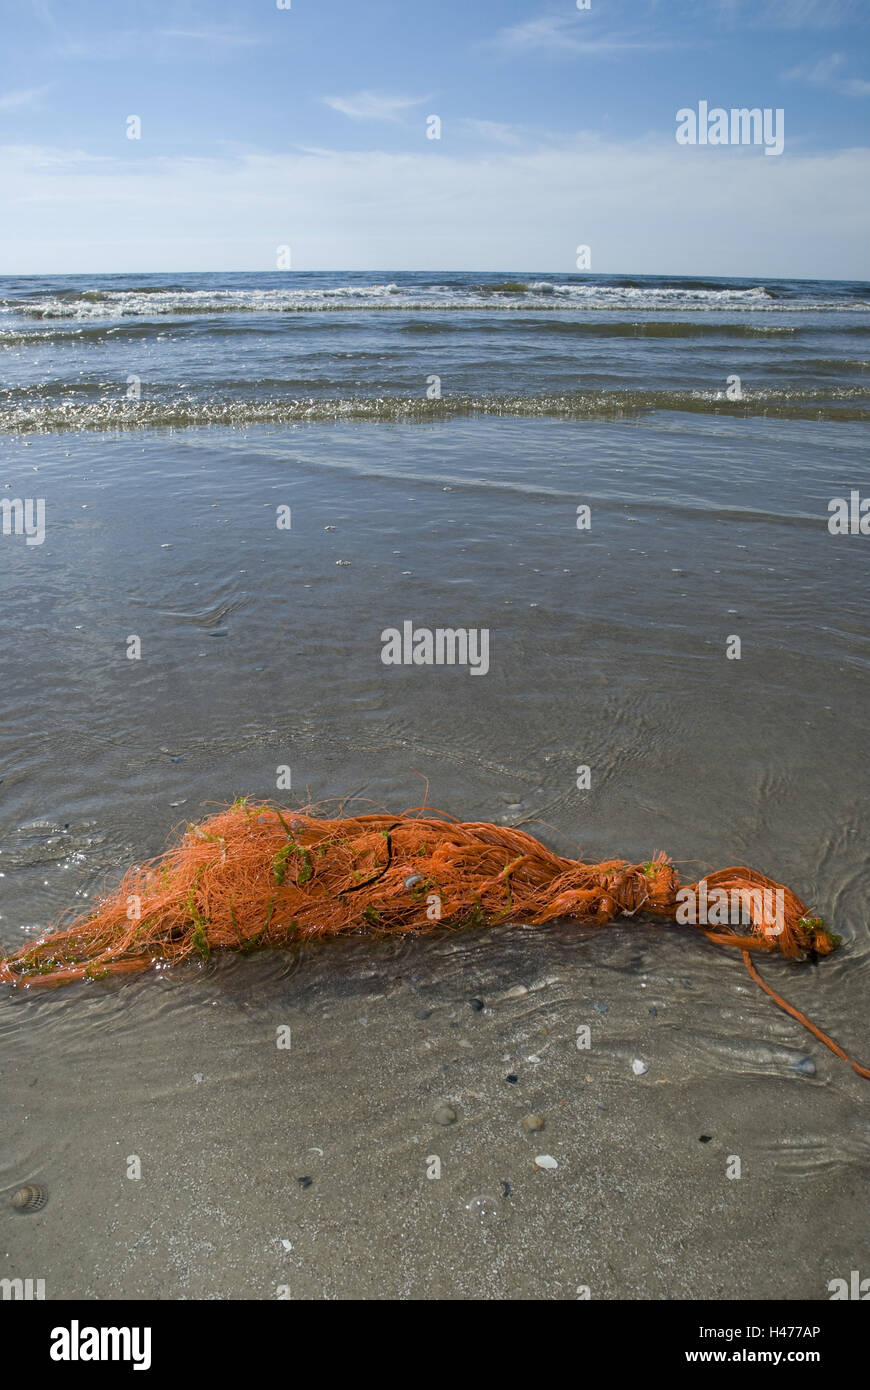 Vecchia rete da pesca sulla spiaggia, Foto Stock